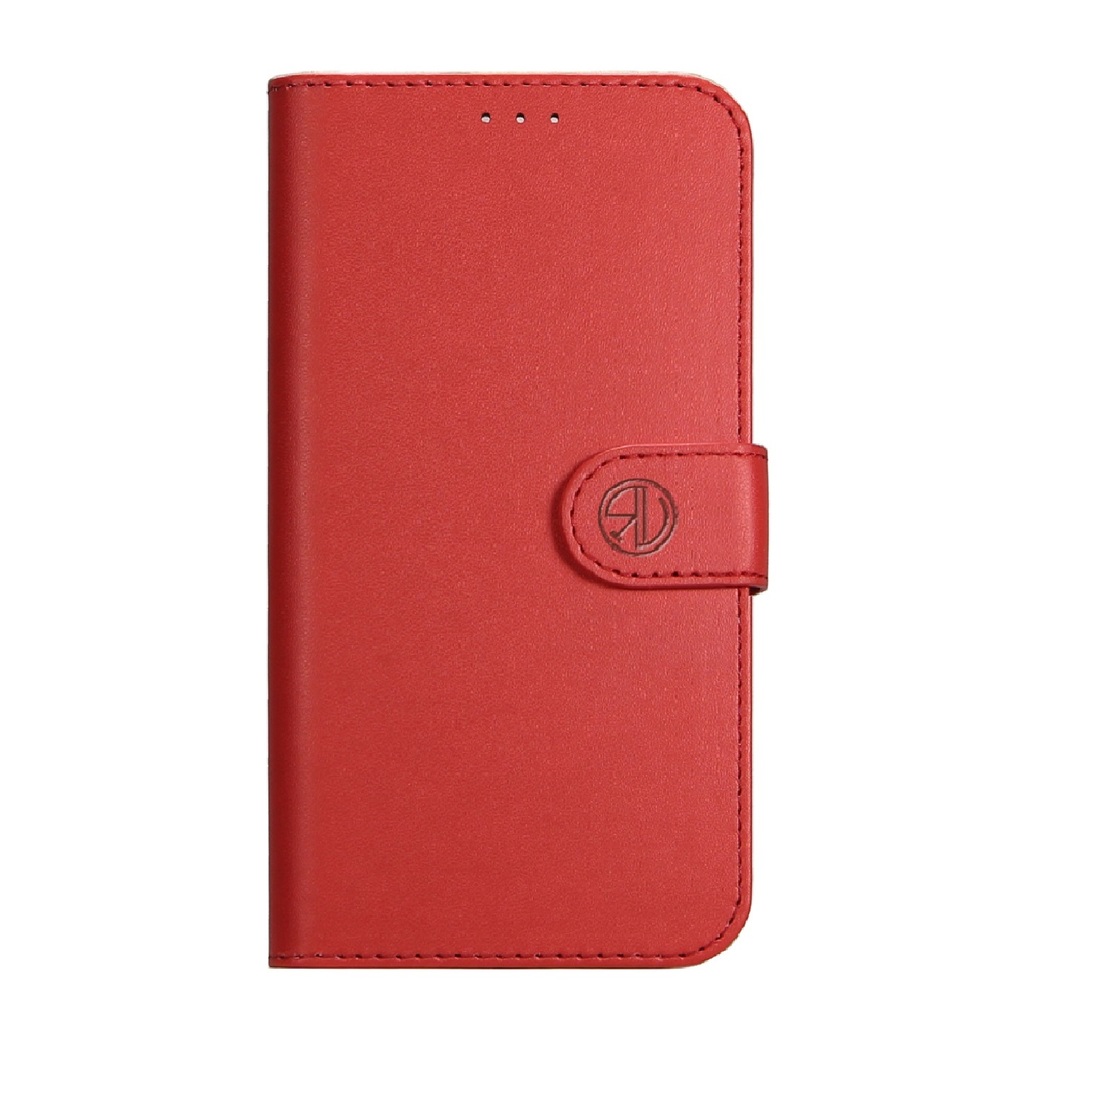 Super Wallet Case Samsung A8 (2018) Red